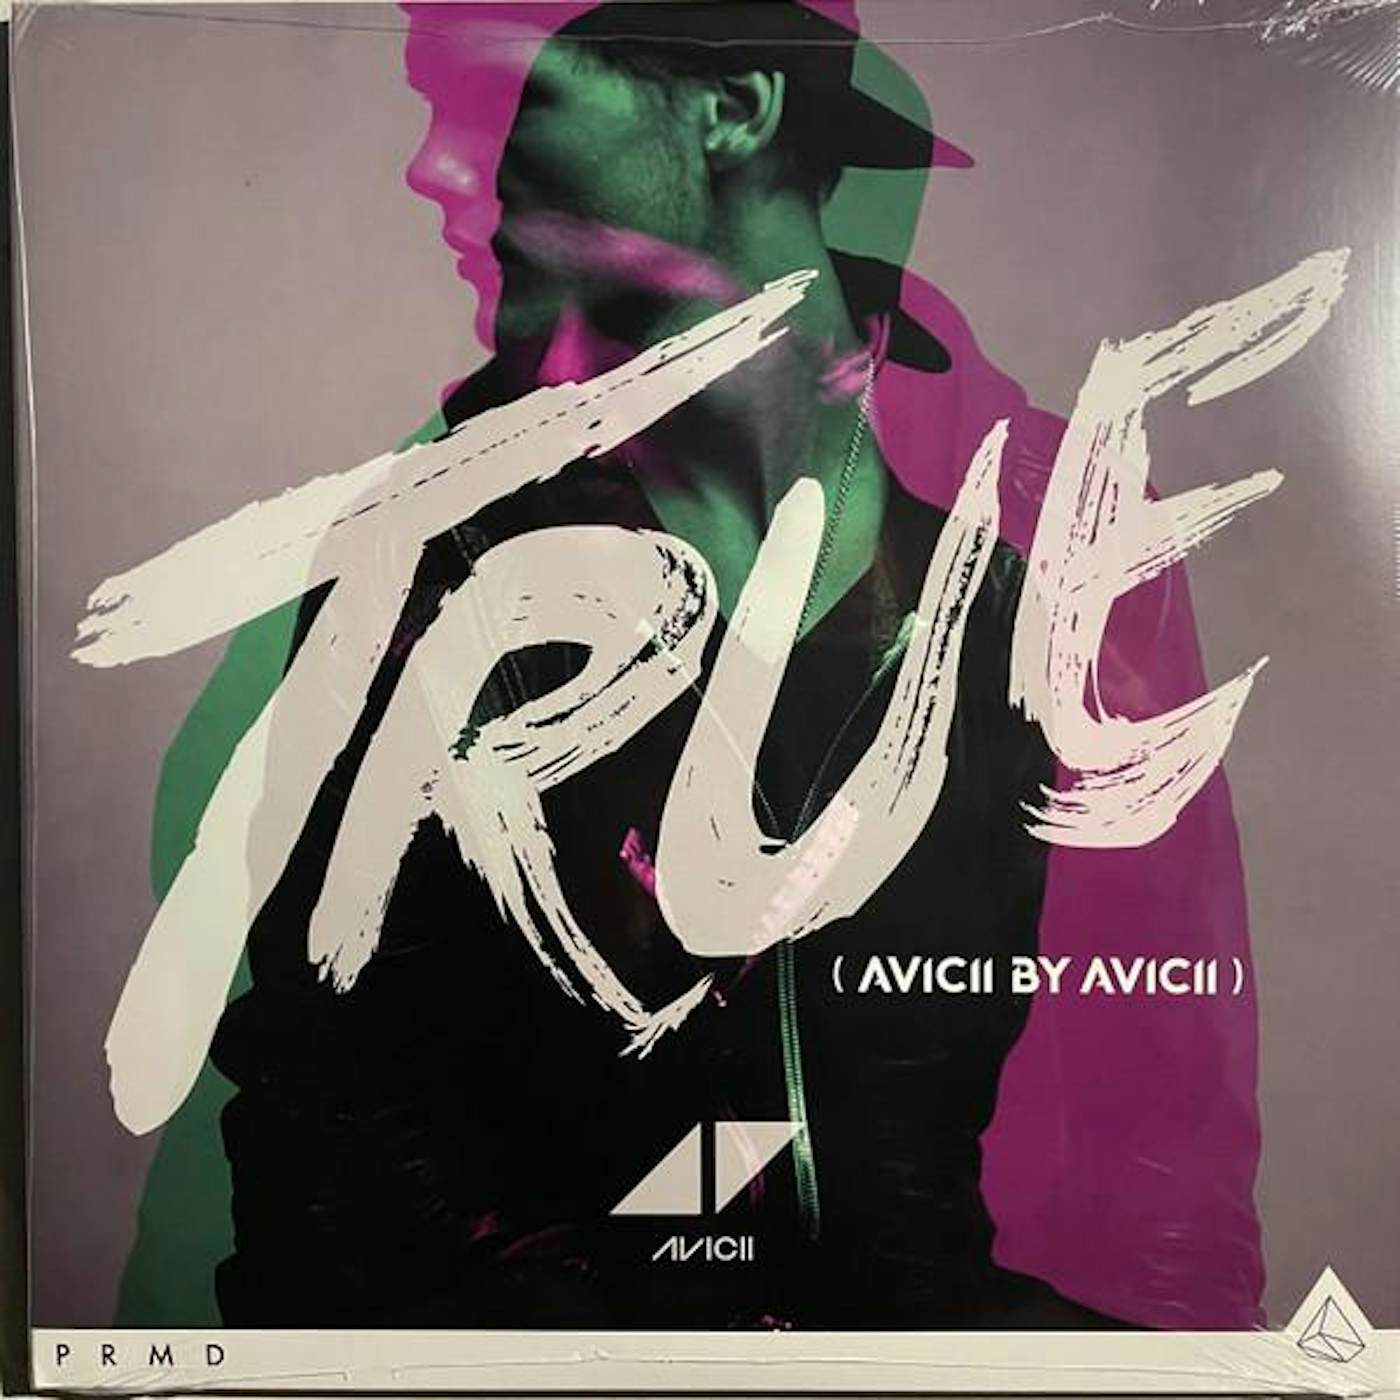 TRUE (AVICII BY AVICII) (2LP) Vinyl Record